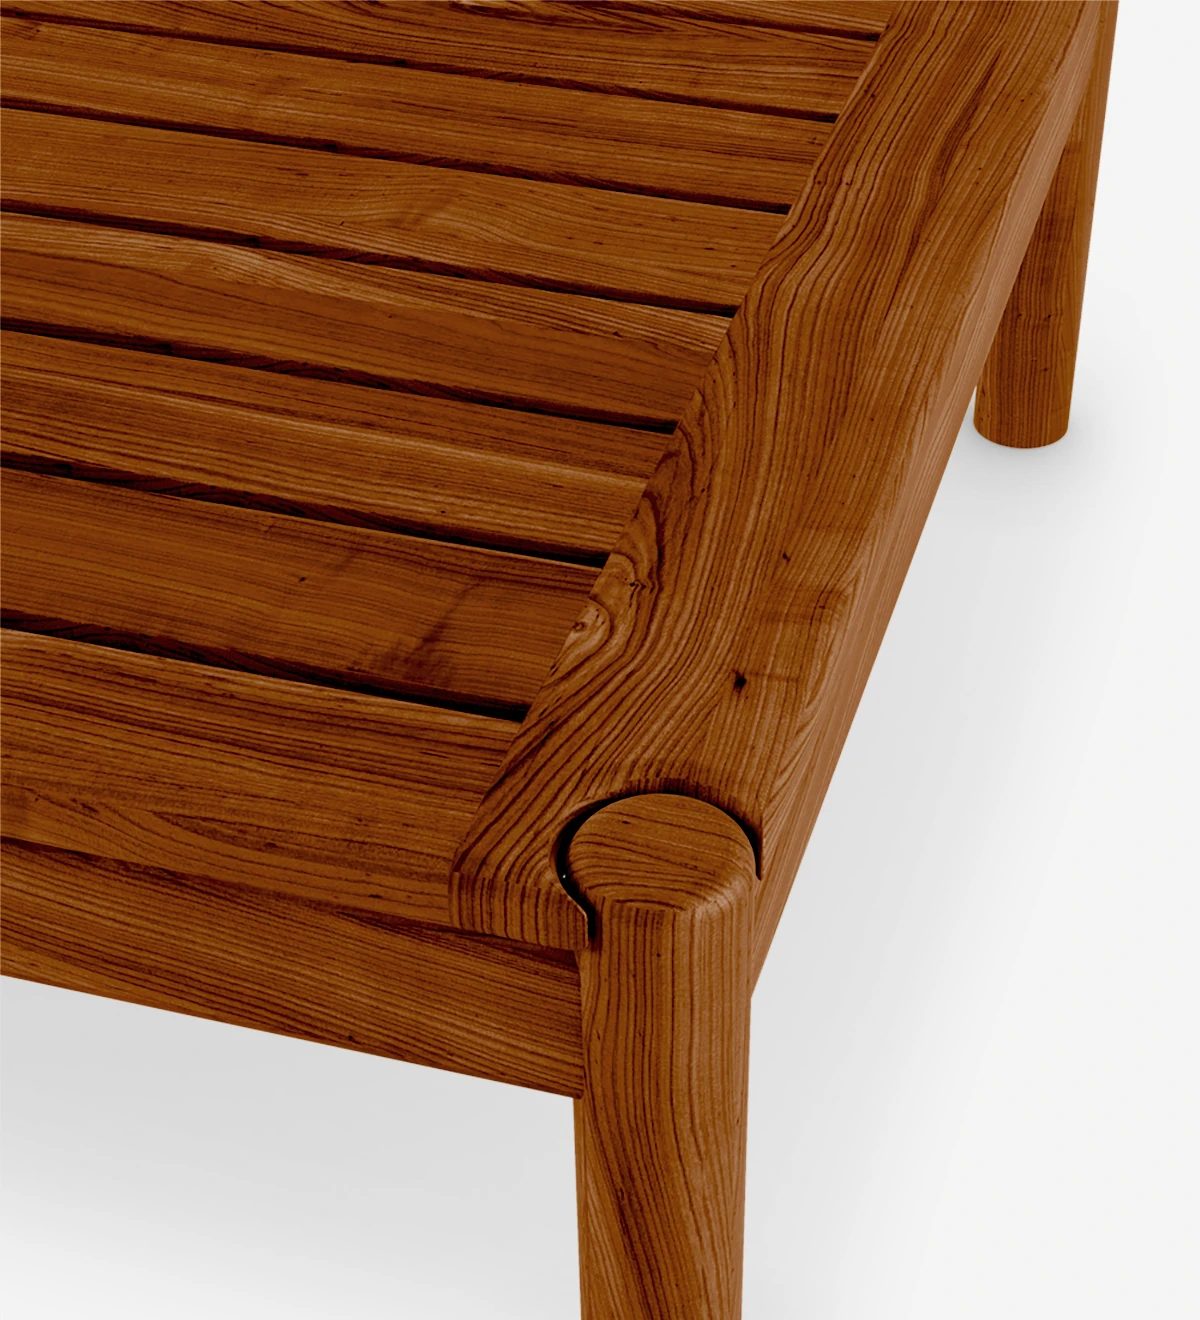 Table basse carrée en bois naturel couleur miel.